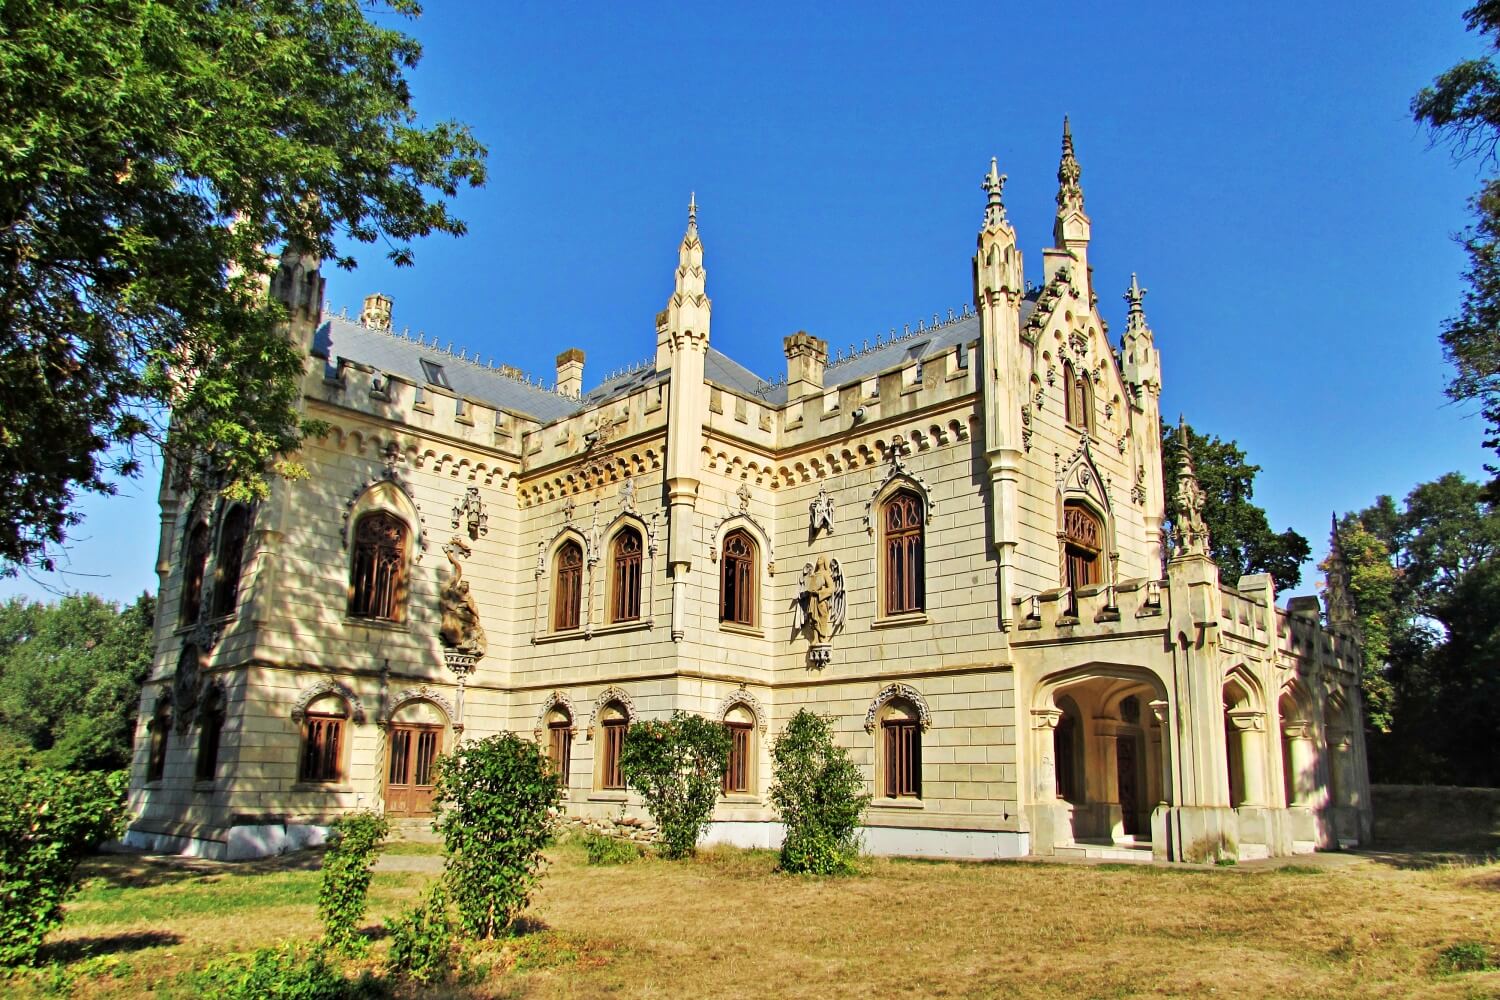 Sturdza Palace